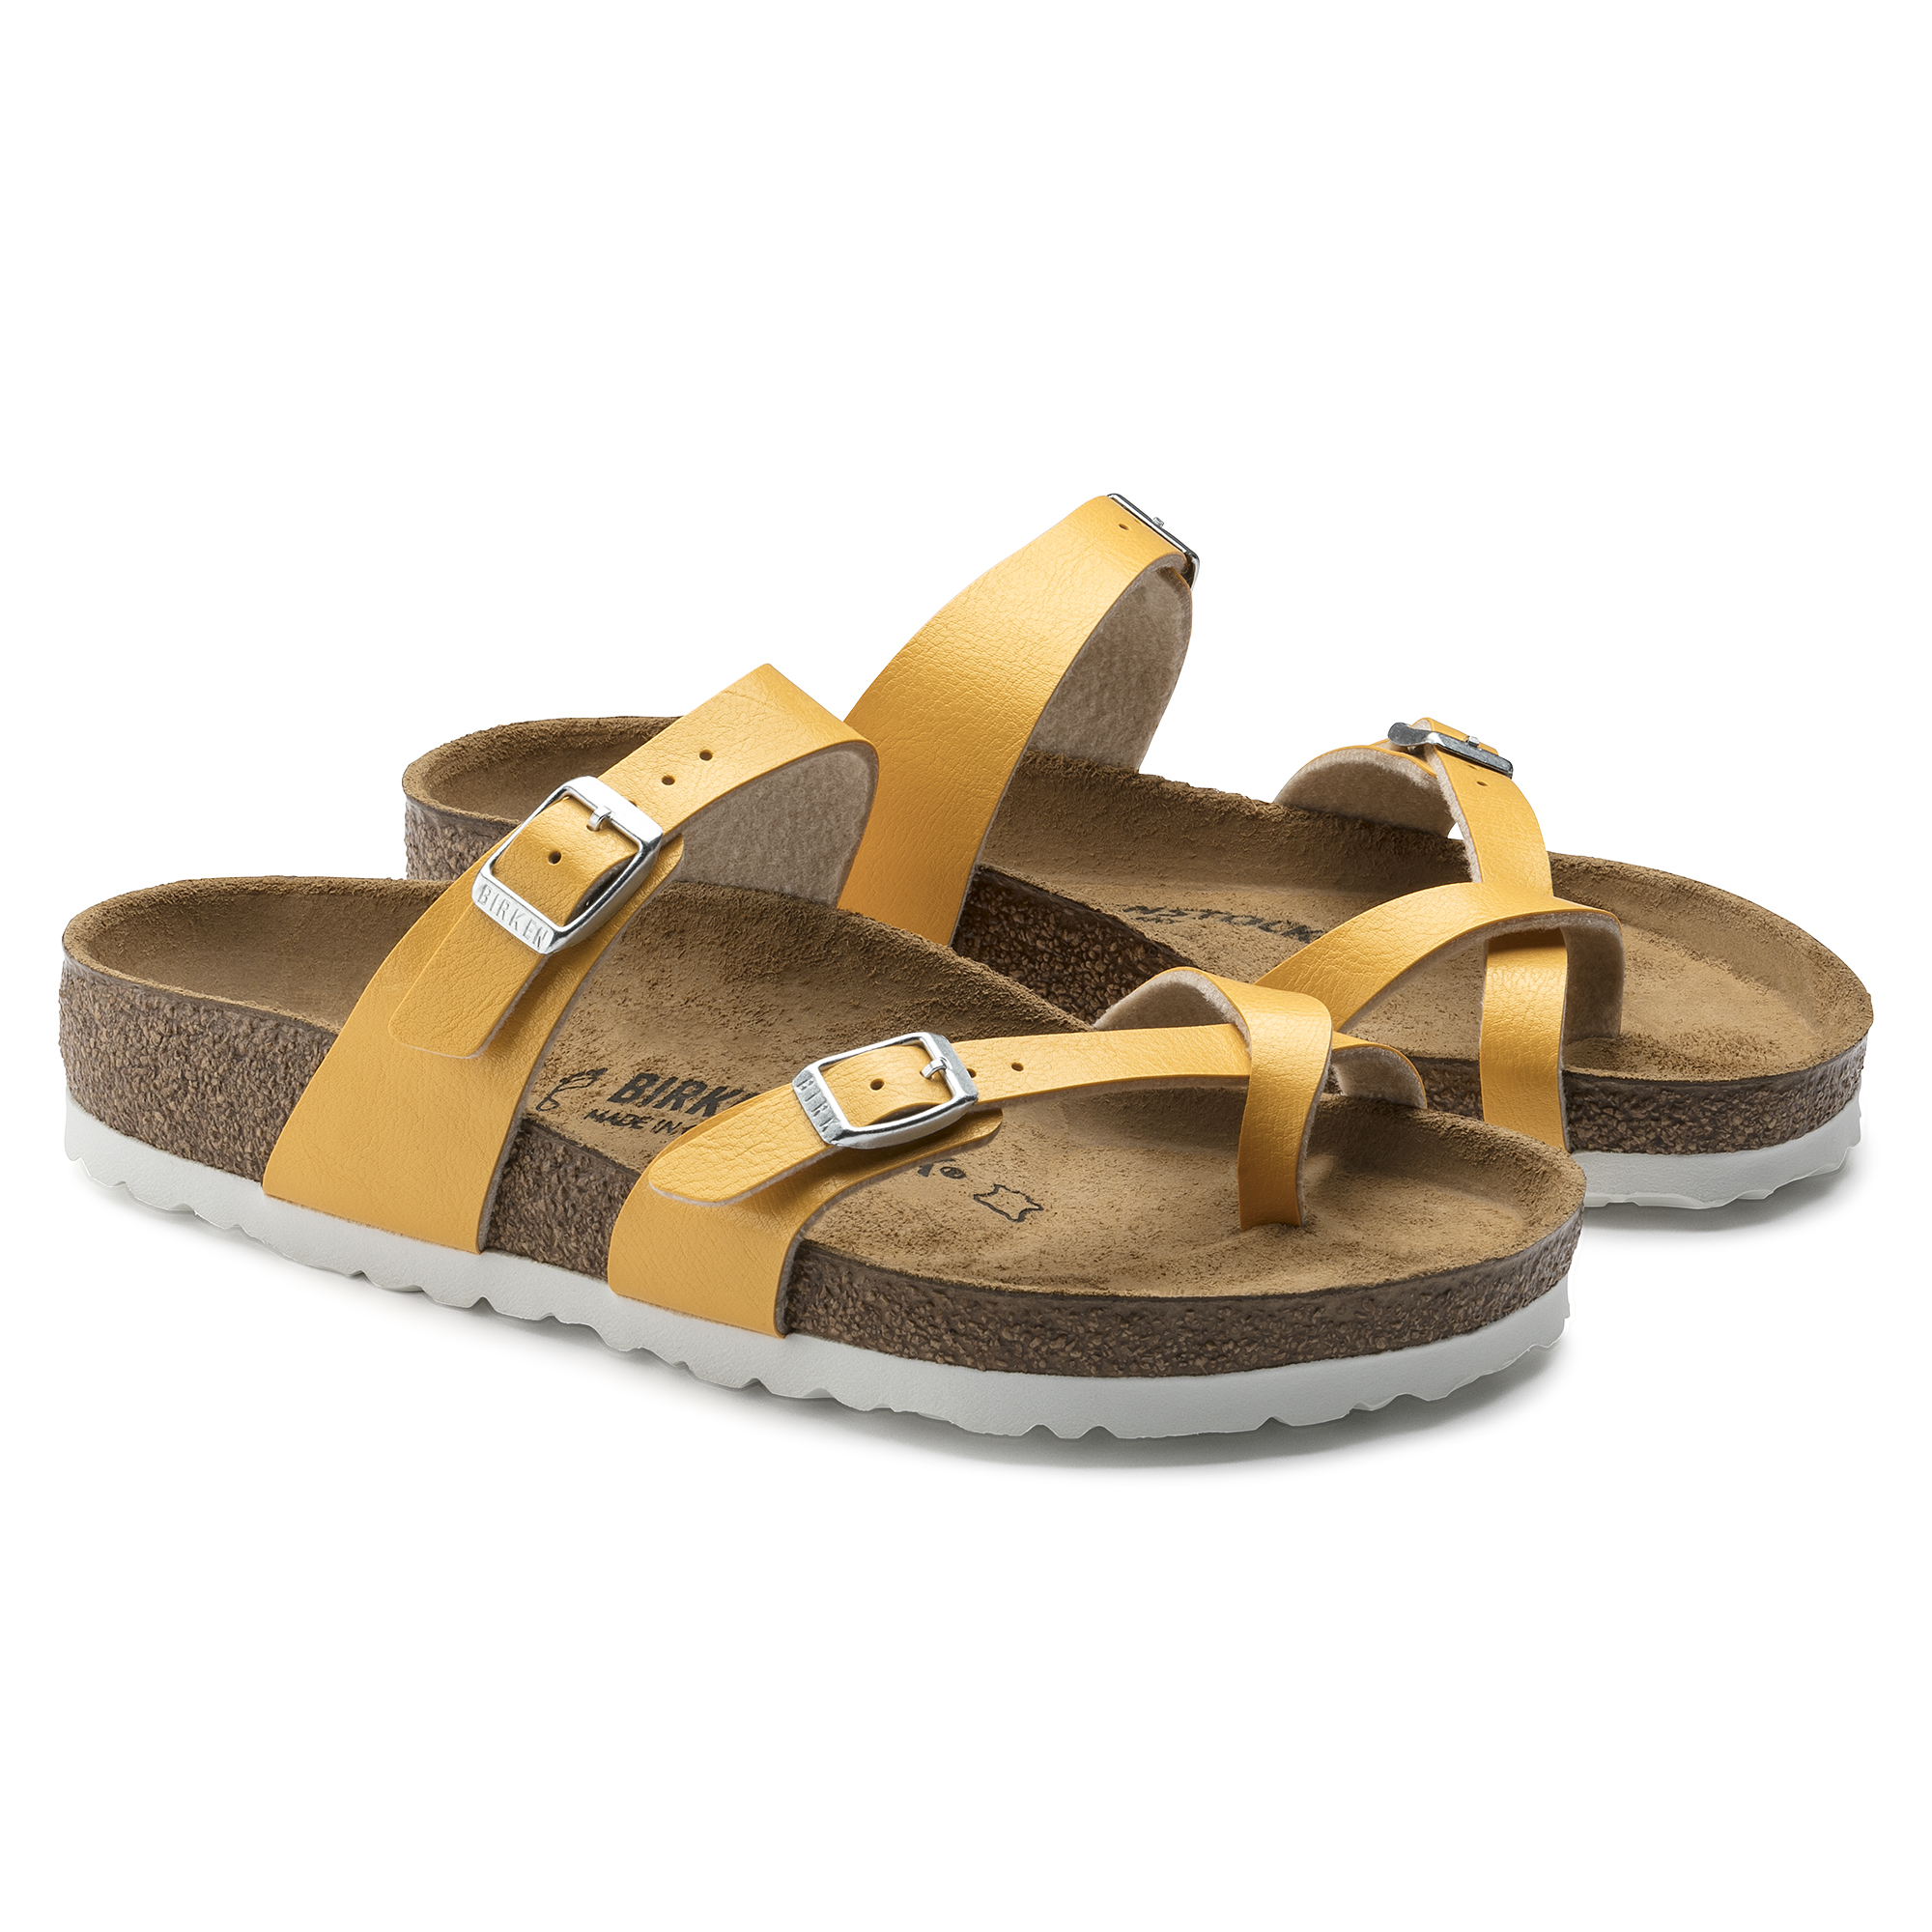 birkenstock yellow sandals